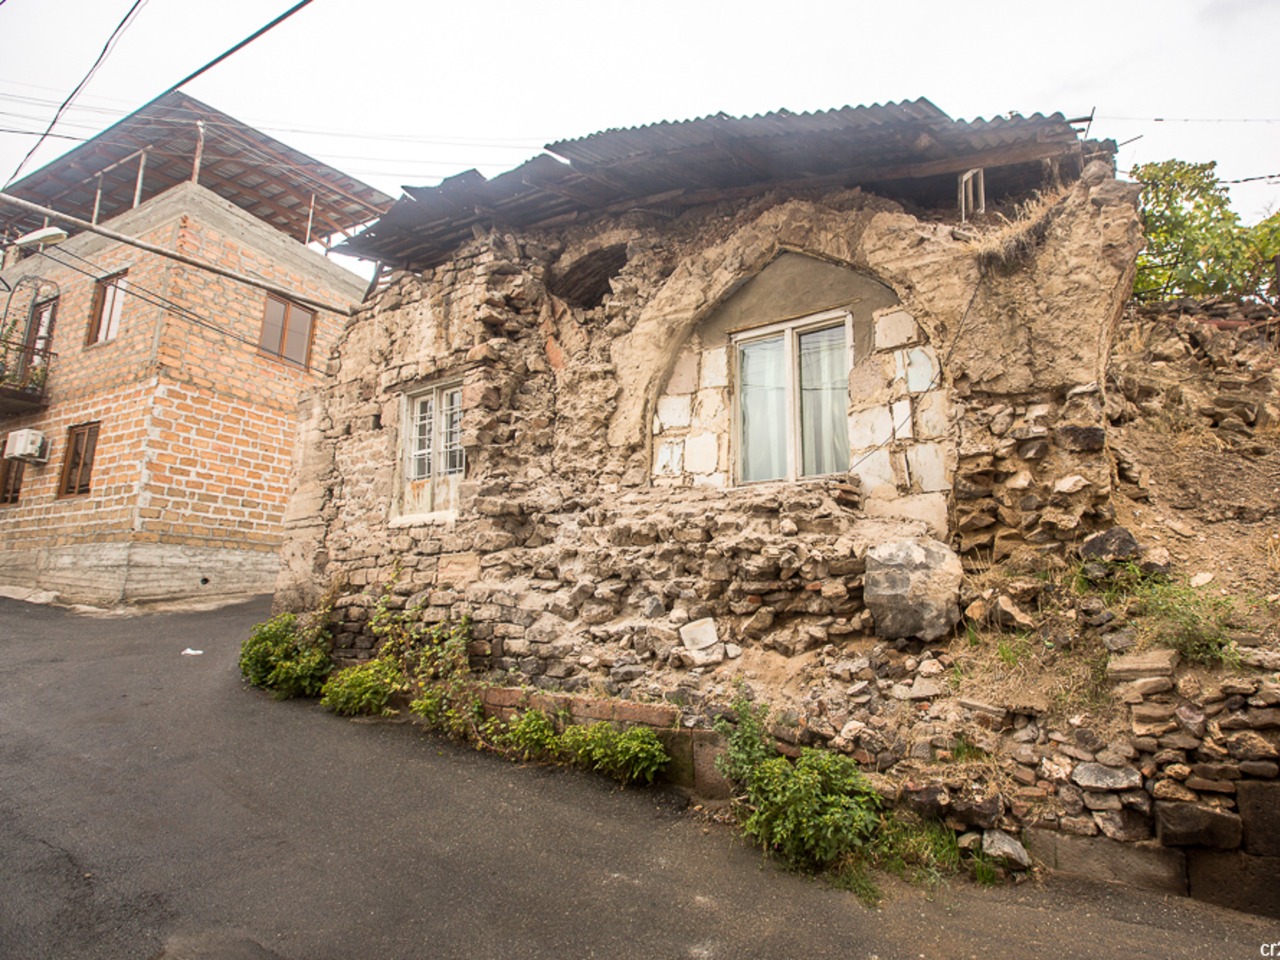 Променад в старейшем районе Еревана: Конд | Цена 98€, отзывы, описание экскурсии